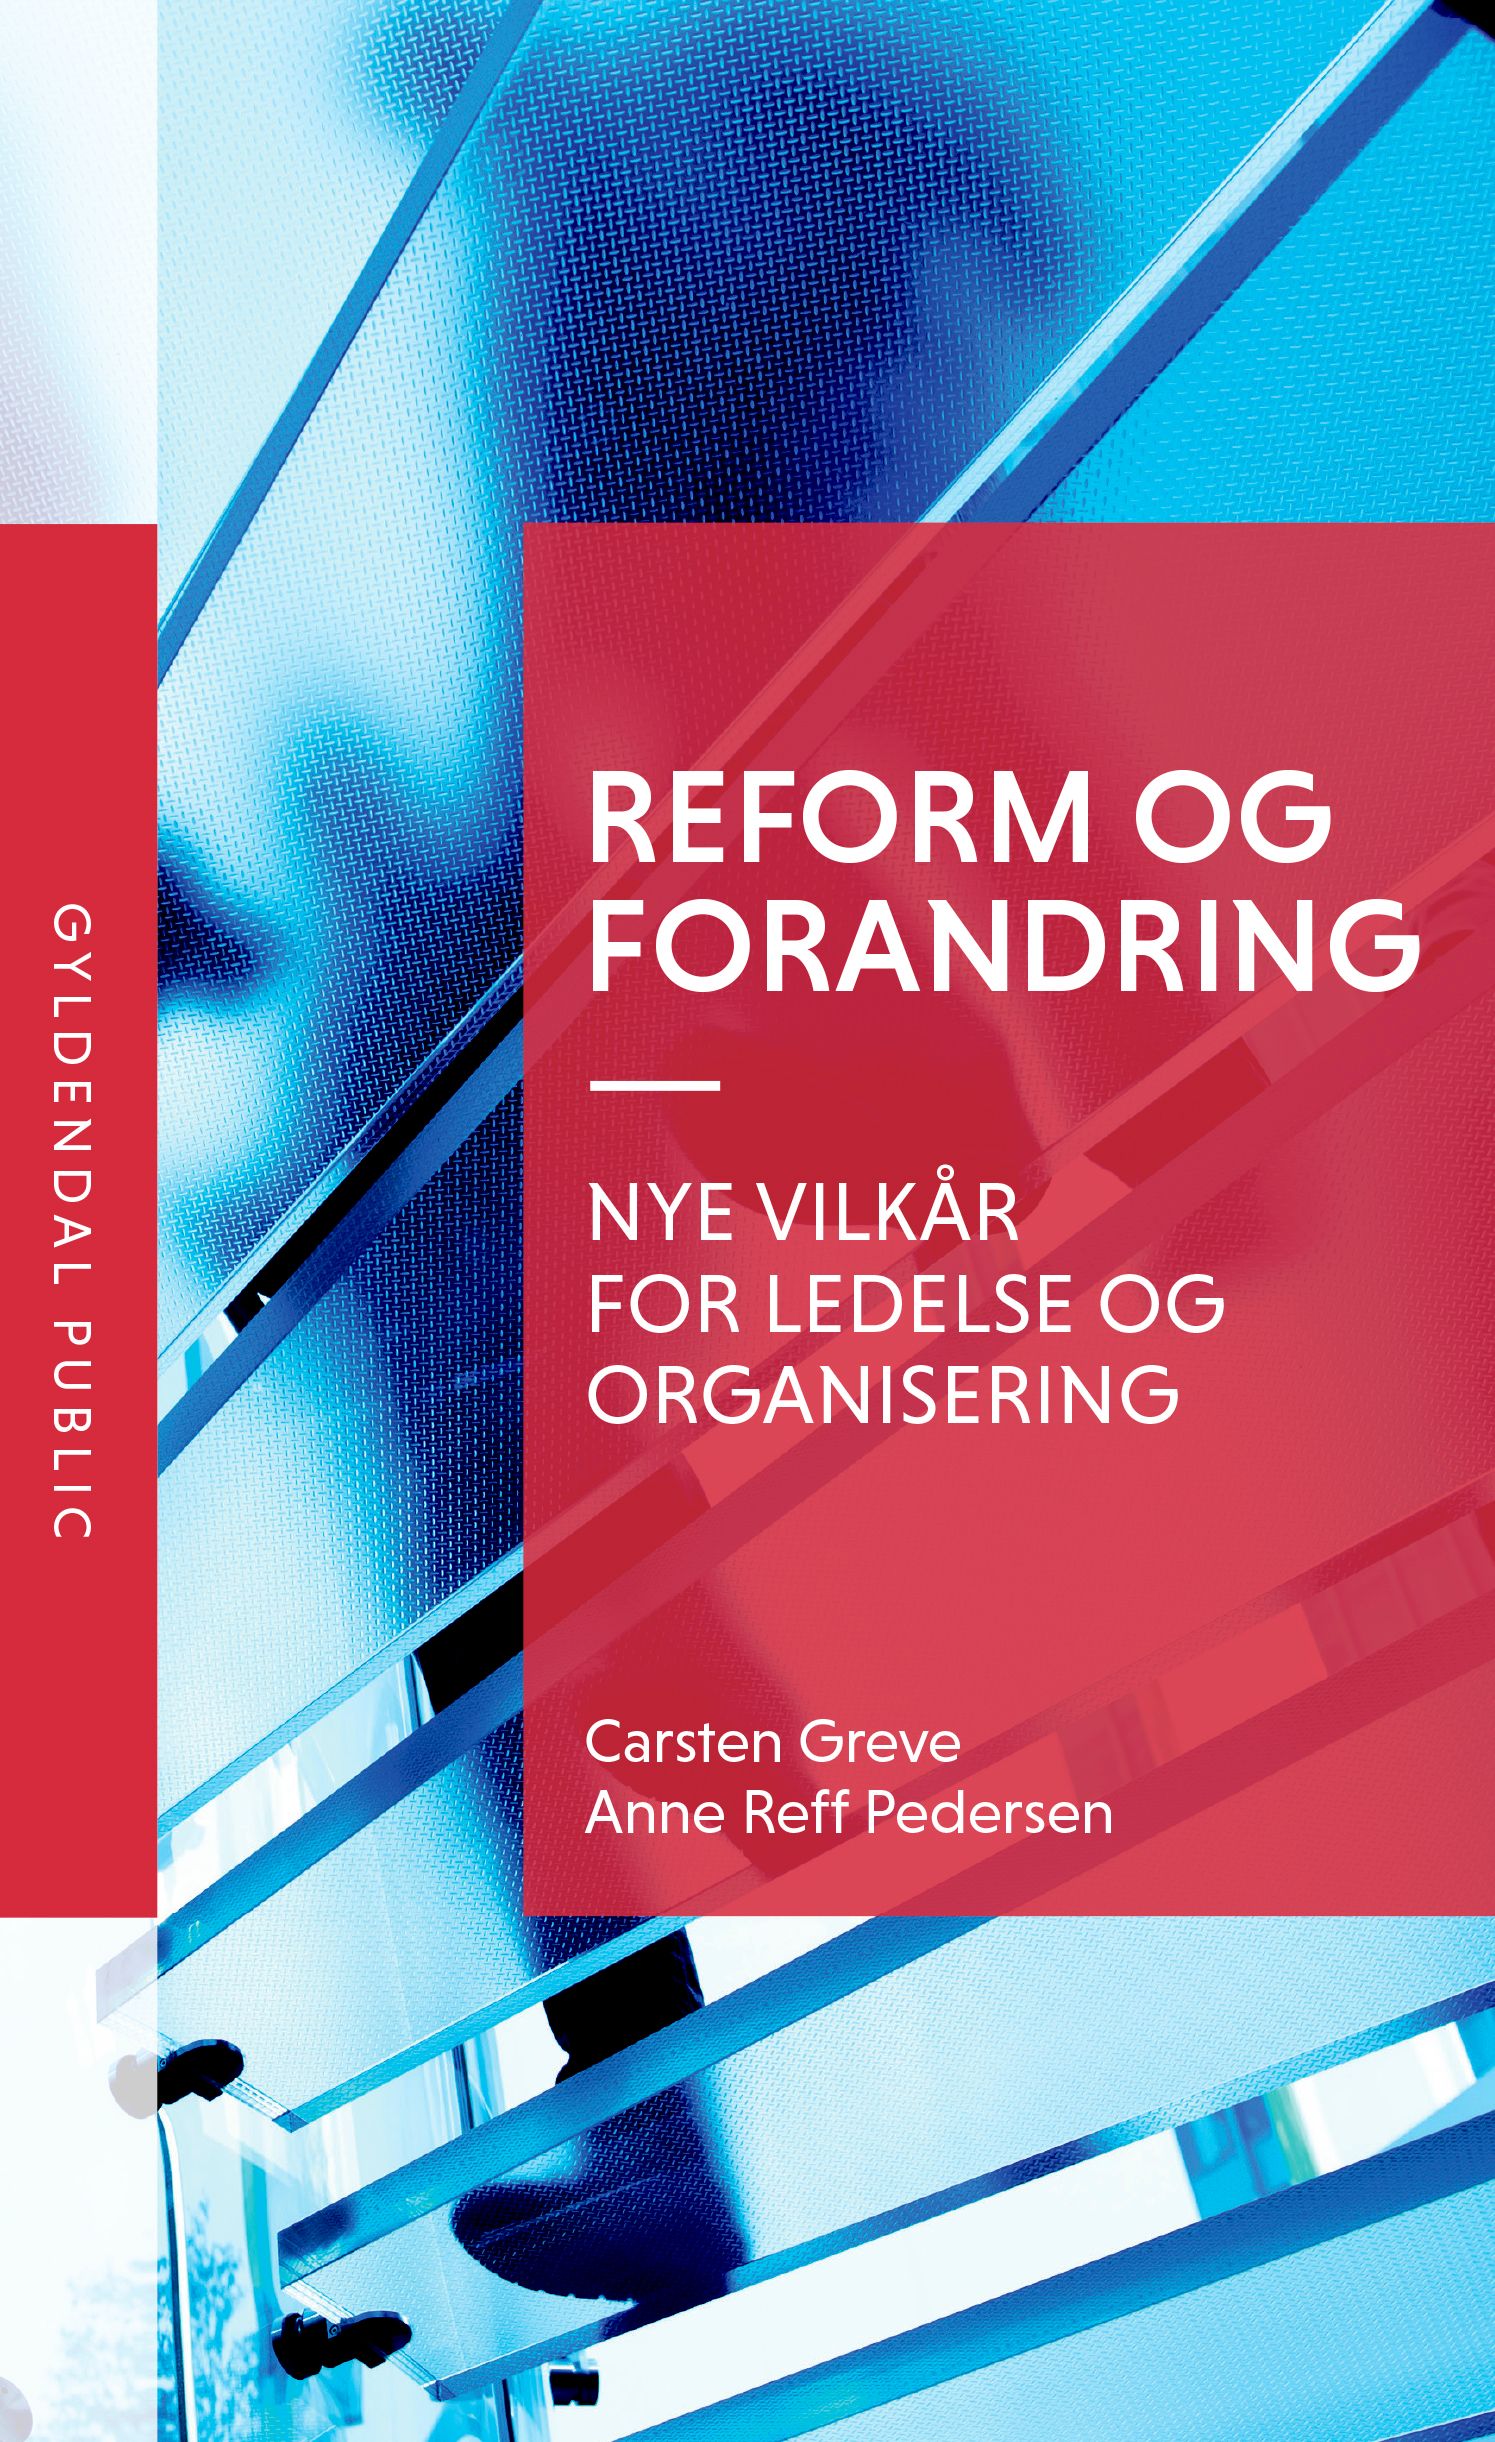 Reform og forandring, e-bog af Carsten Greve, Anne Reff Pedersen